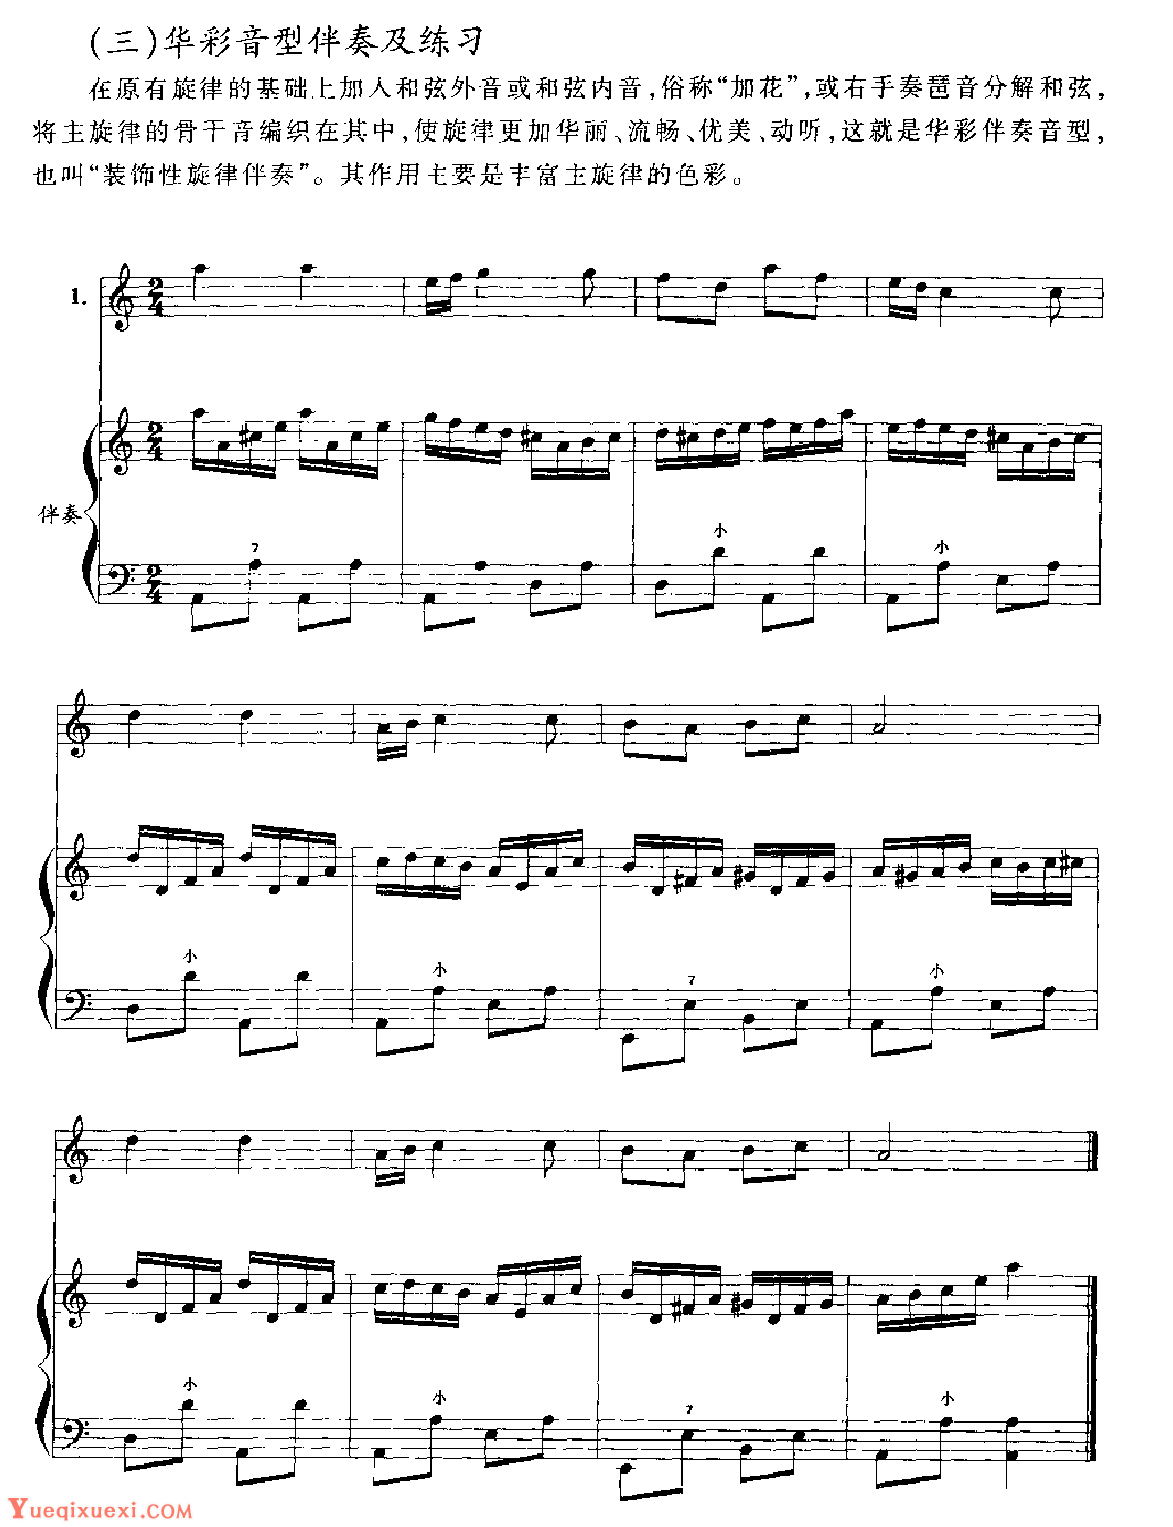 应掌握的几种手风琴伴奏类型7